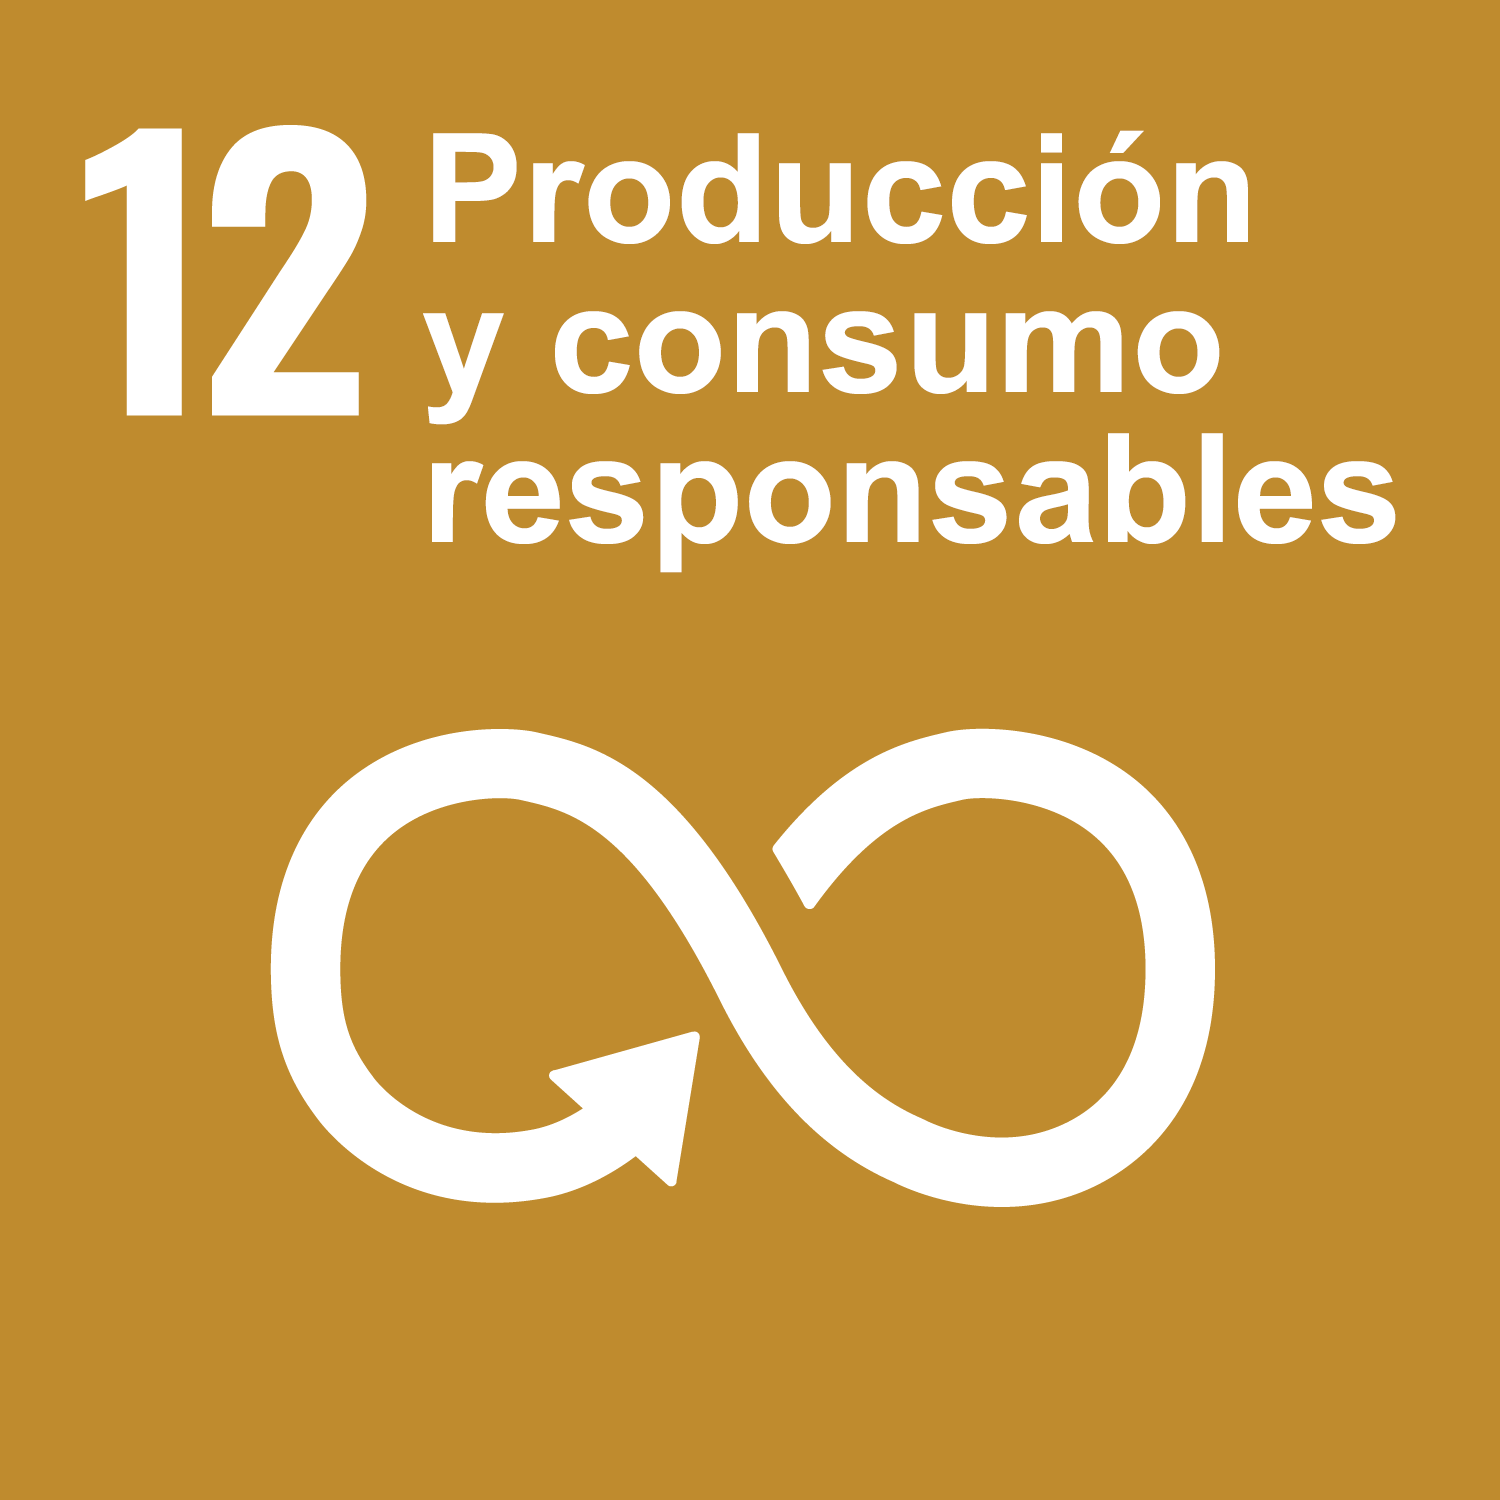 Objetivo 12: Producción y consumo responsables